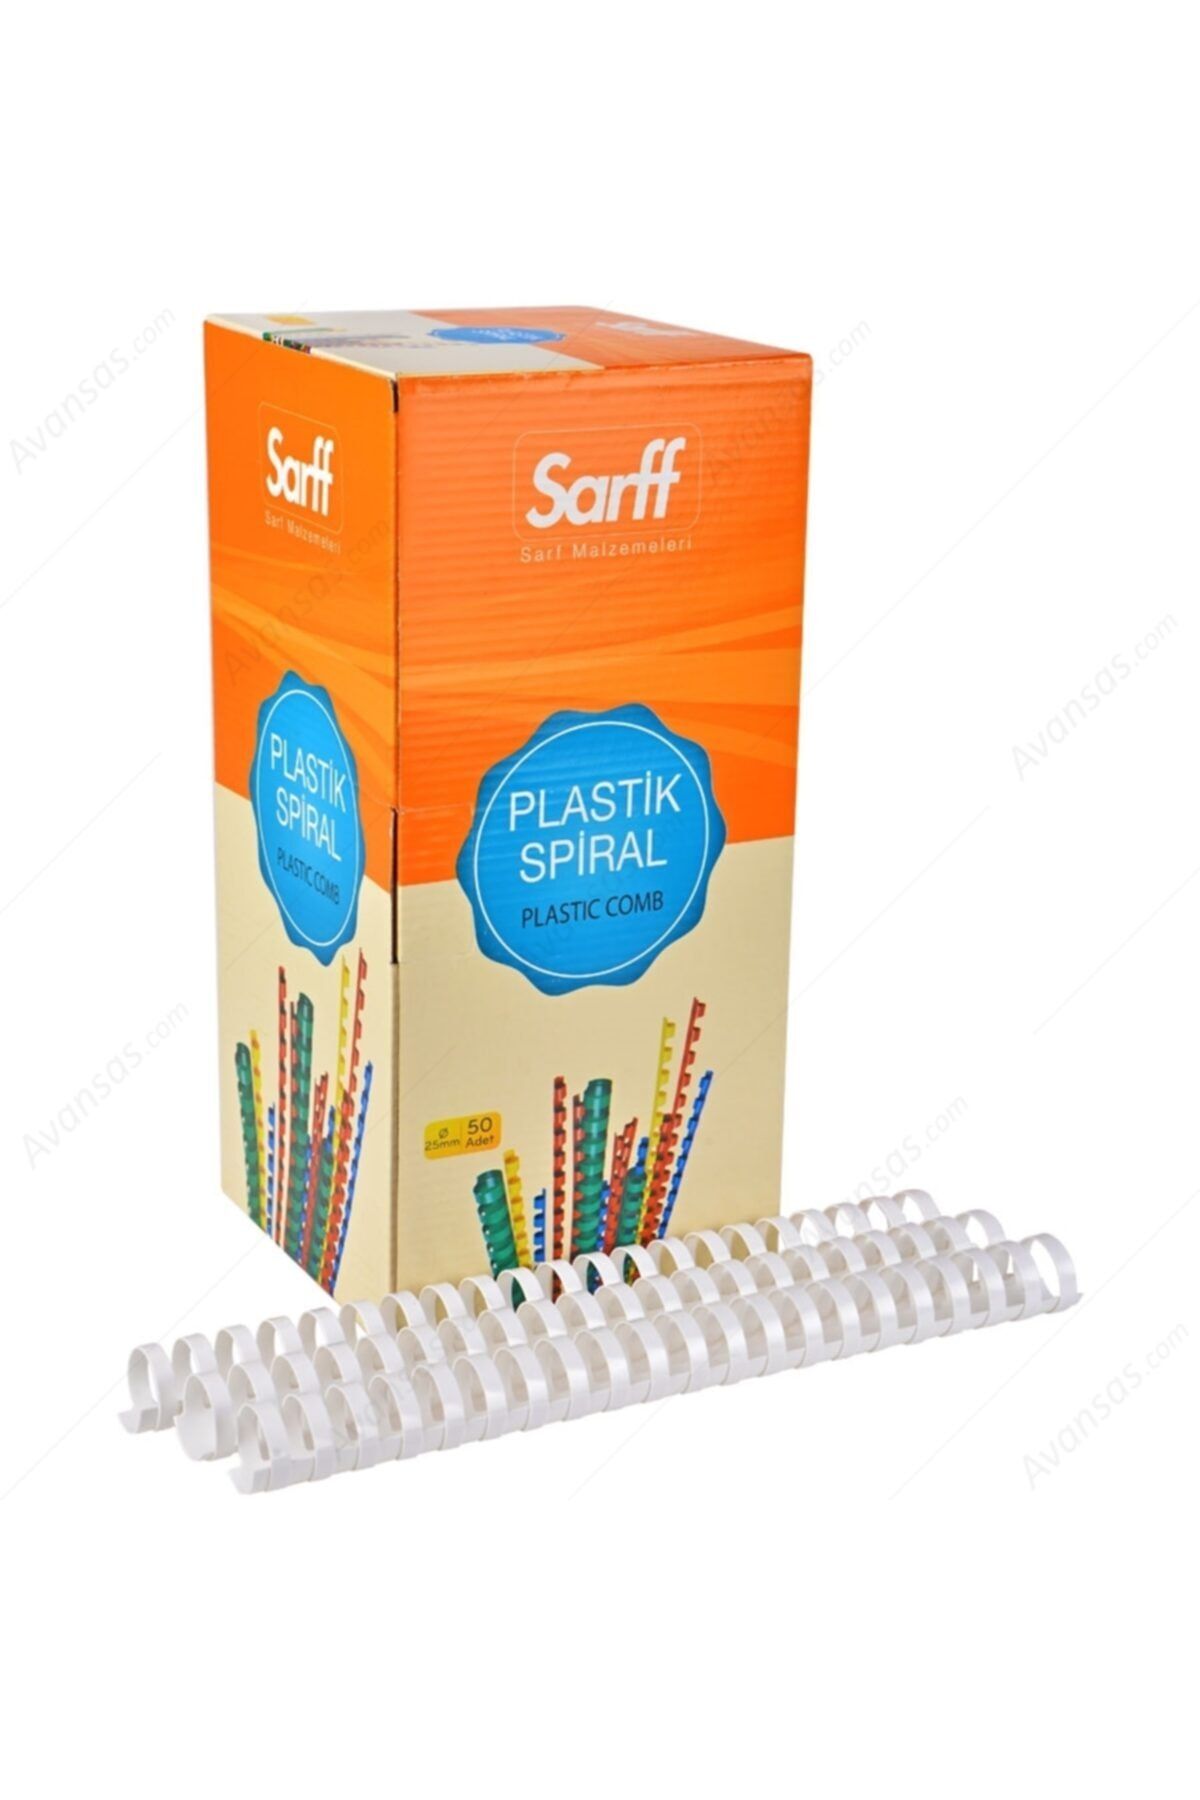 SARFF Plastik Spiral 38 Mm Beyaz 50 Li (1 Paket 50 Adet)